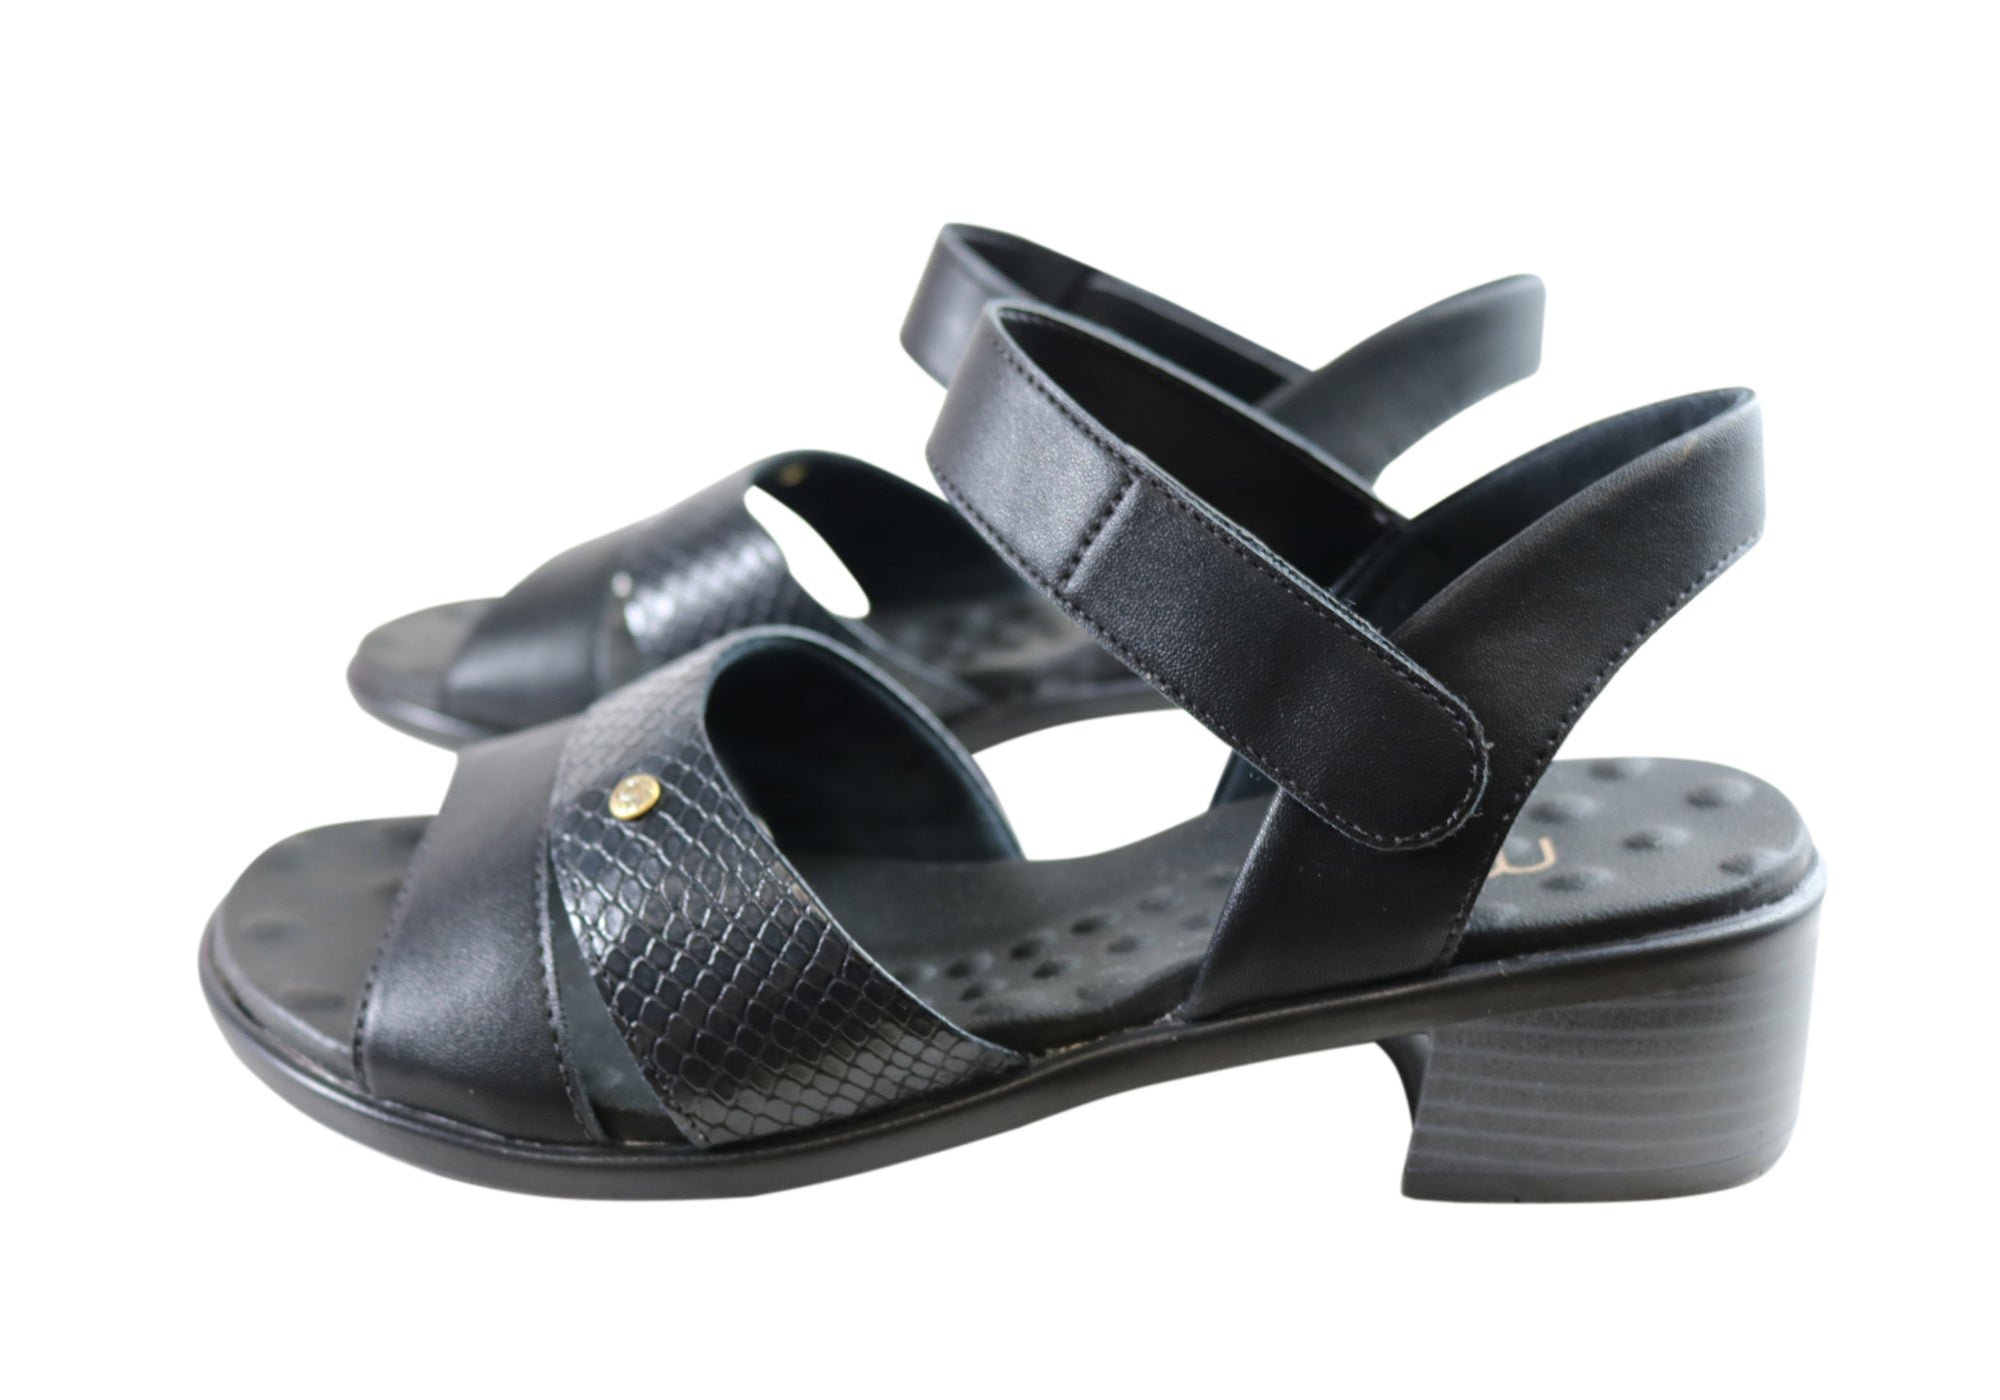 Malu Supercomfort Calla Womens Comfort Low Heel Sandals Made In Brazil